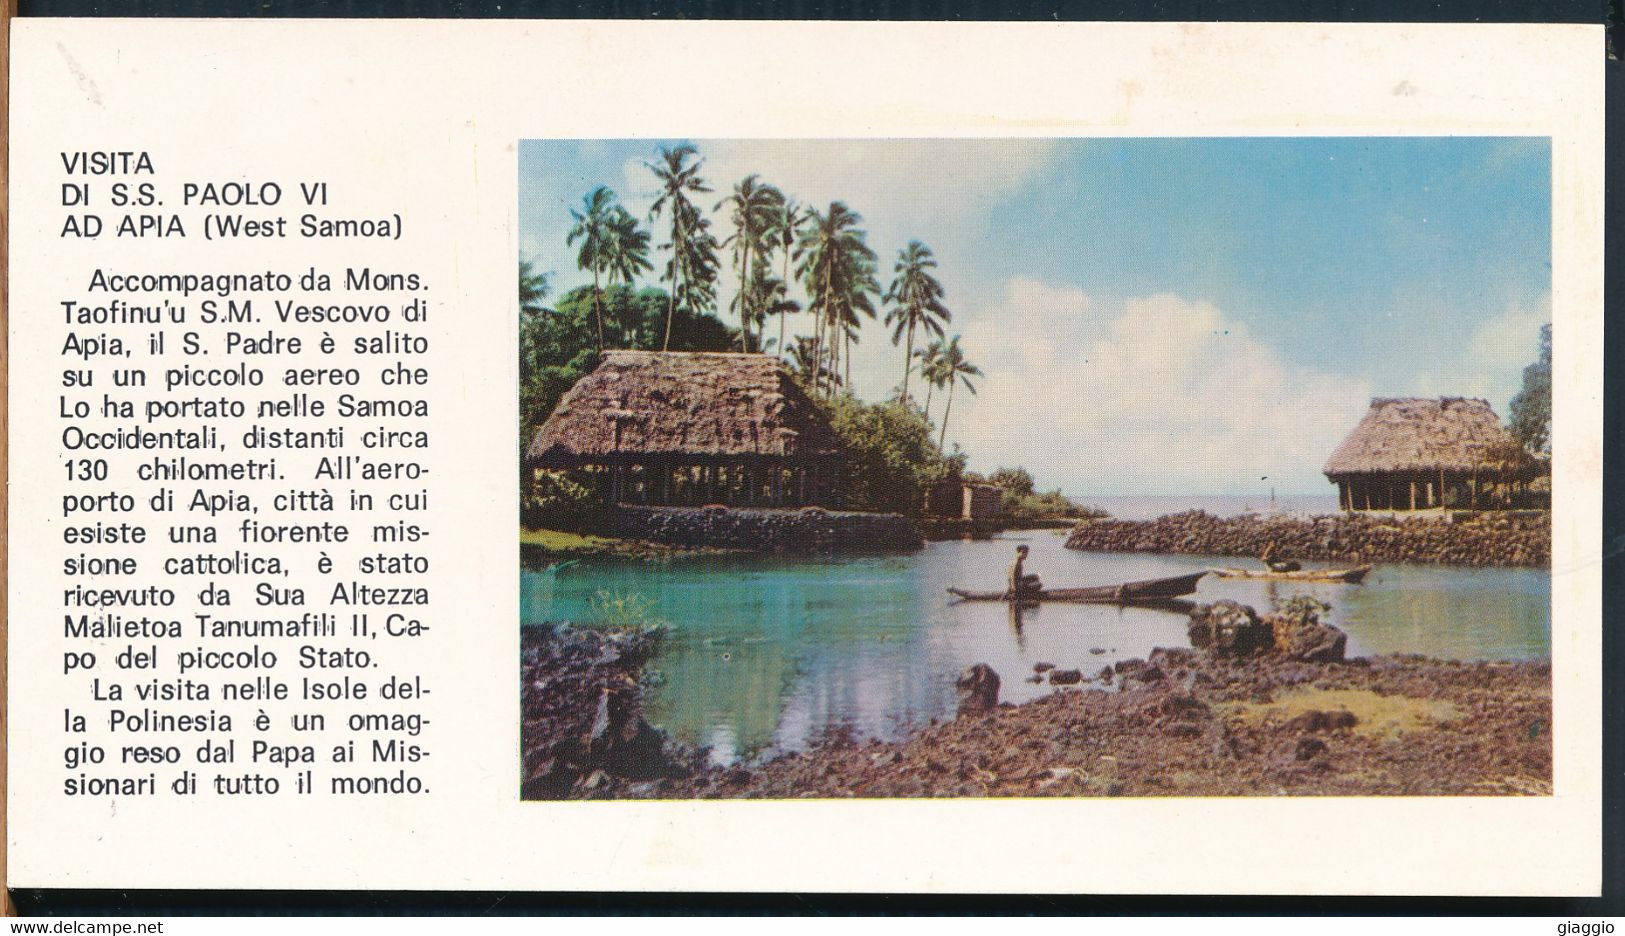 °°° 28771 - VISITA DI S.S. PAOLO VI AD APIA (WEST SAMOA) - VILLAGGIO INDIGENO °°° - Samoa